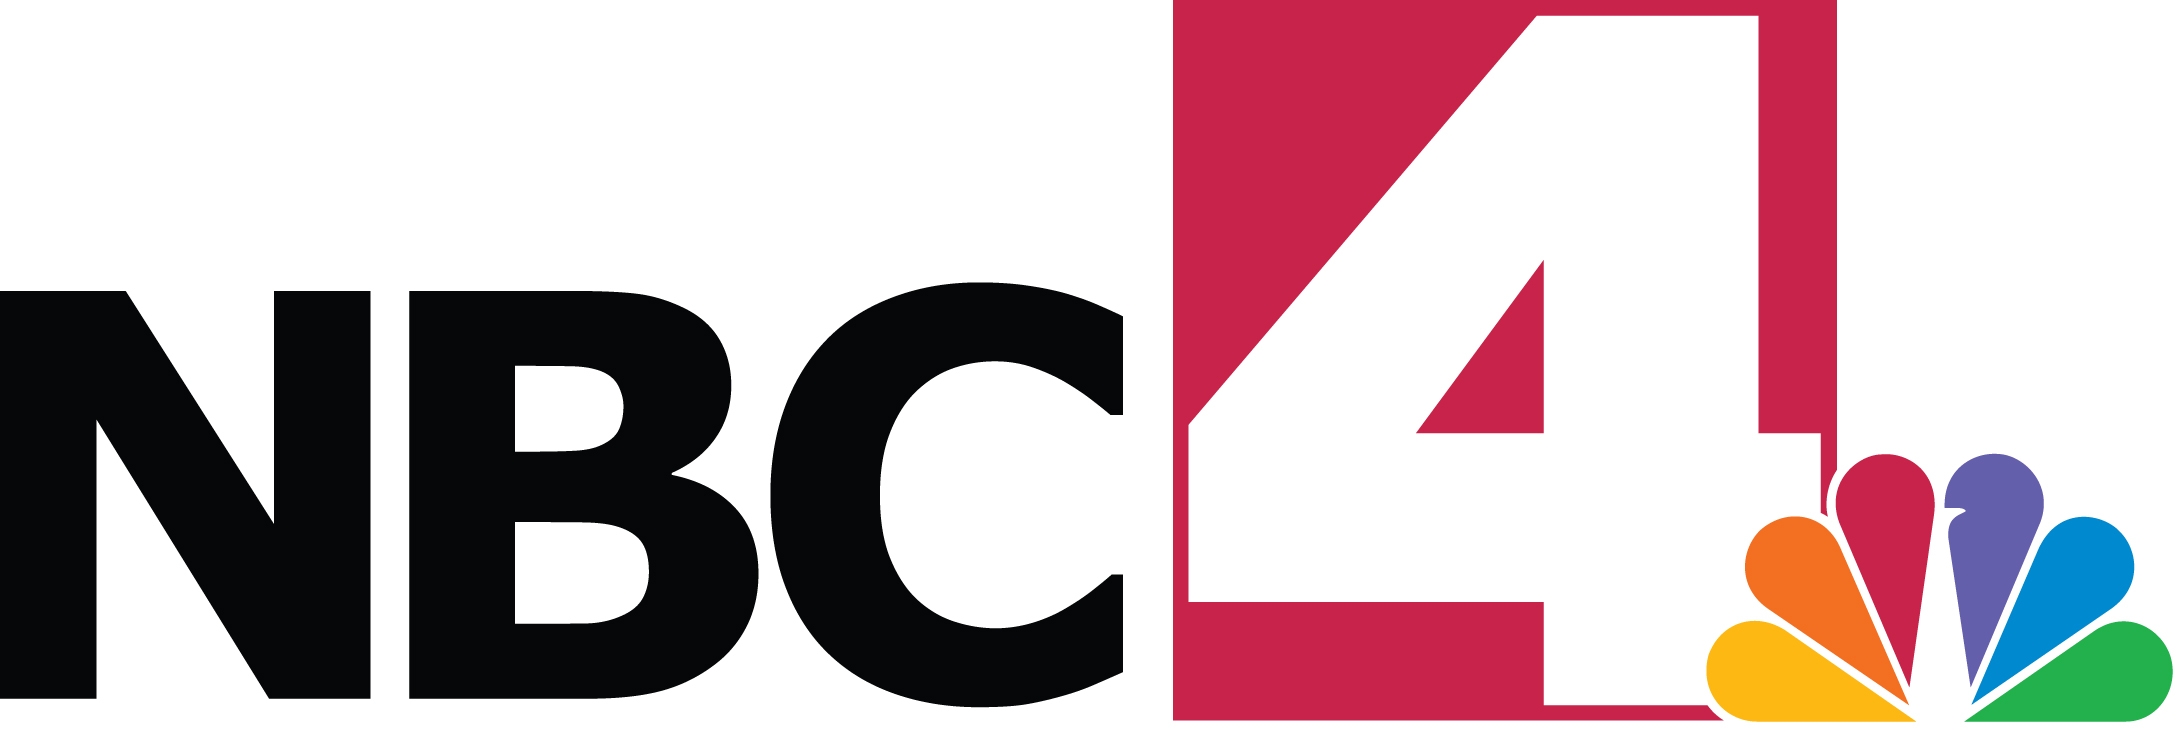 4 NBC Logo photo - 1